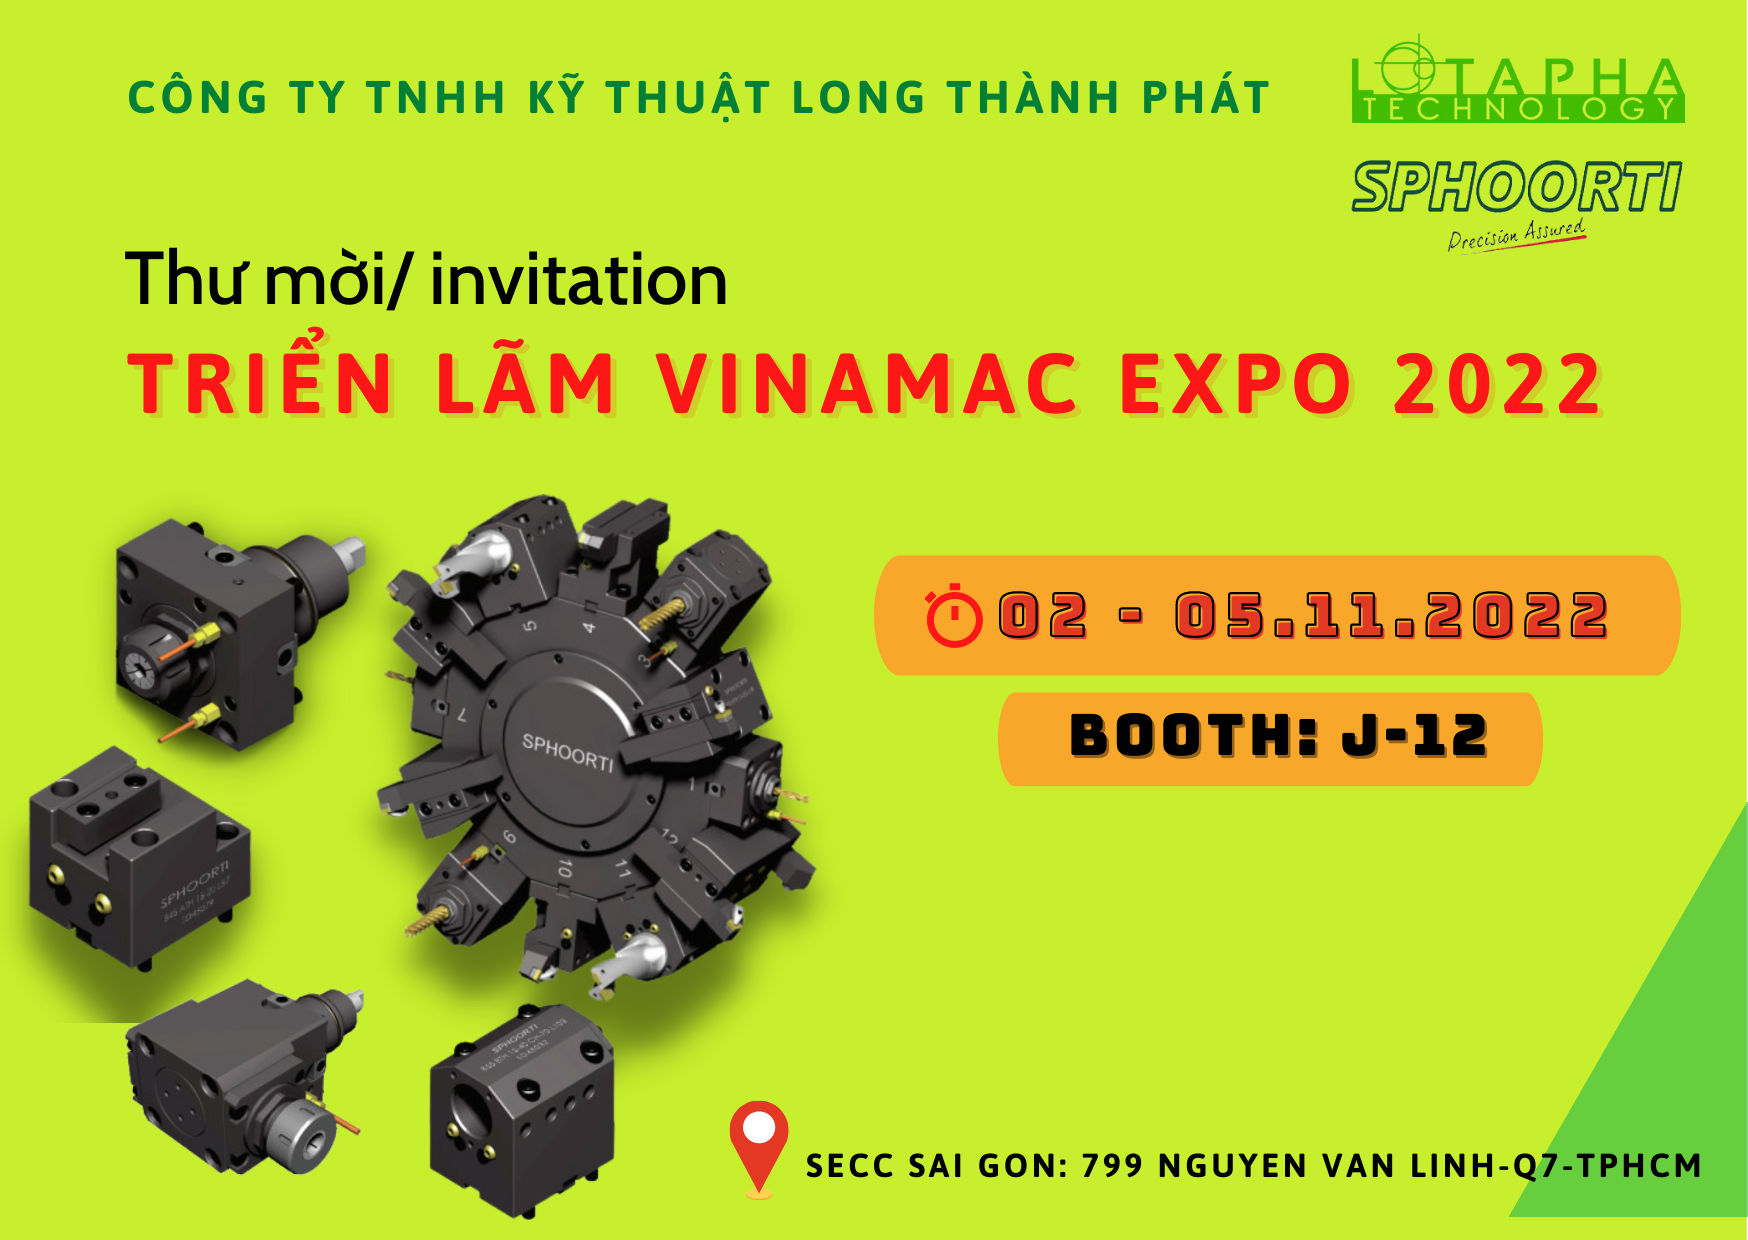 Triển lãm Quốc tế về Máy móc, Thiết bị, Công nghệ và Sản phẩm công nghiệp tại Thành phố Hồ Chí Minh (VINAMAC EXPO 2022)